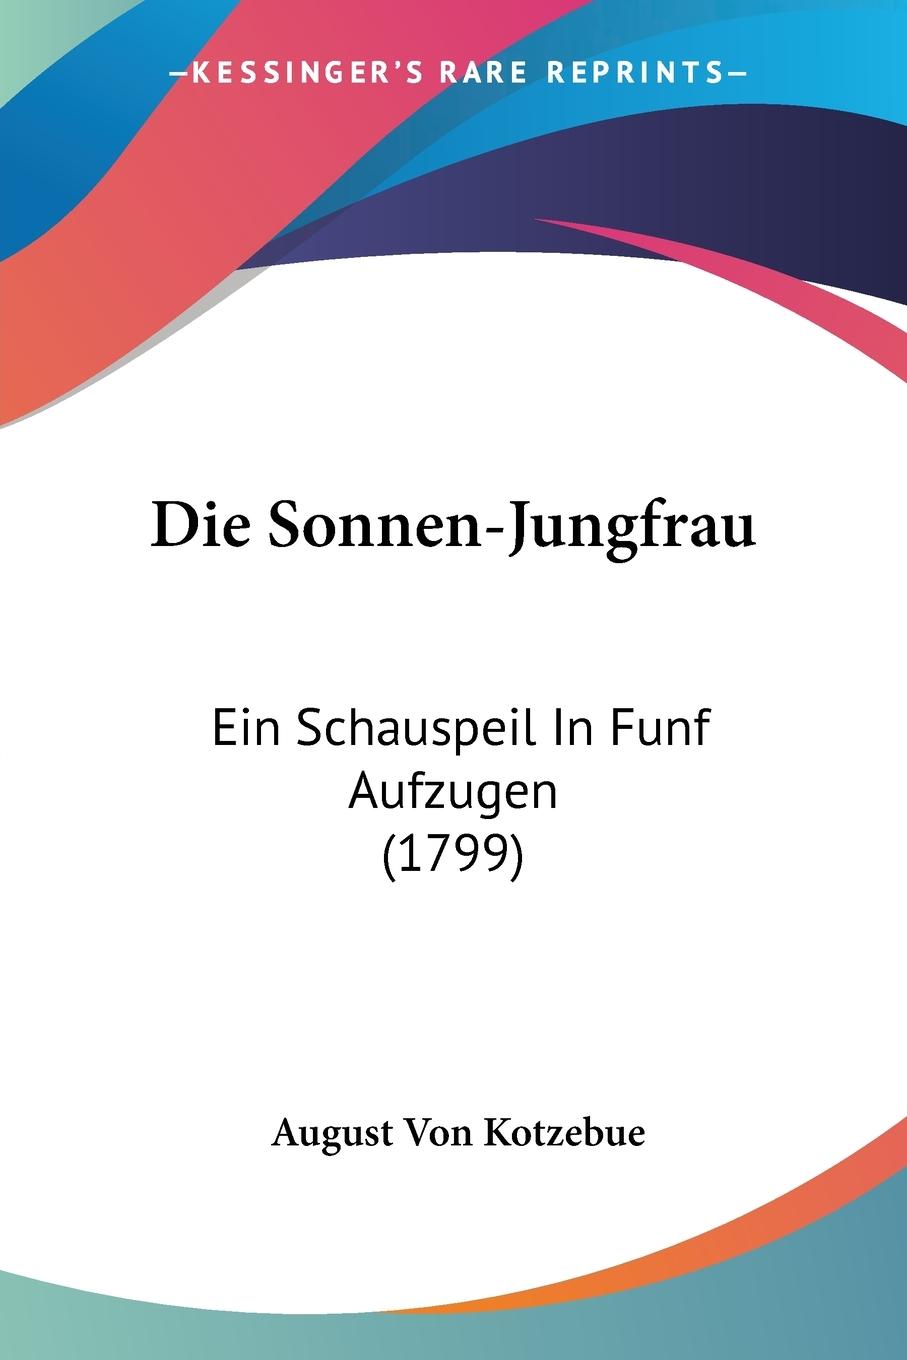 Die Sonnen-Jungfrau / Ein Schauspeil In Funf Aufzugen (1799) / August Von Kotzebue / Taschenbuch / Paperback / Deutsch / 2009 / Kessinger Publishing, LLC / EAN 9781104858810 - Kotzebue, August Von